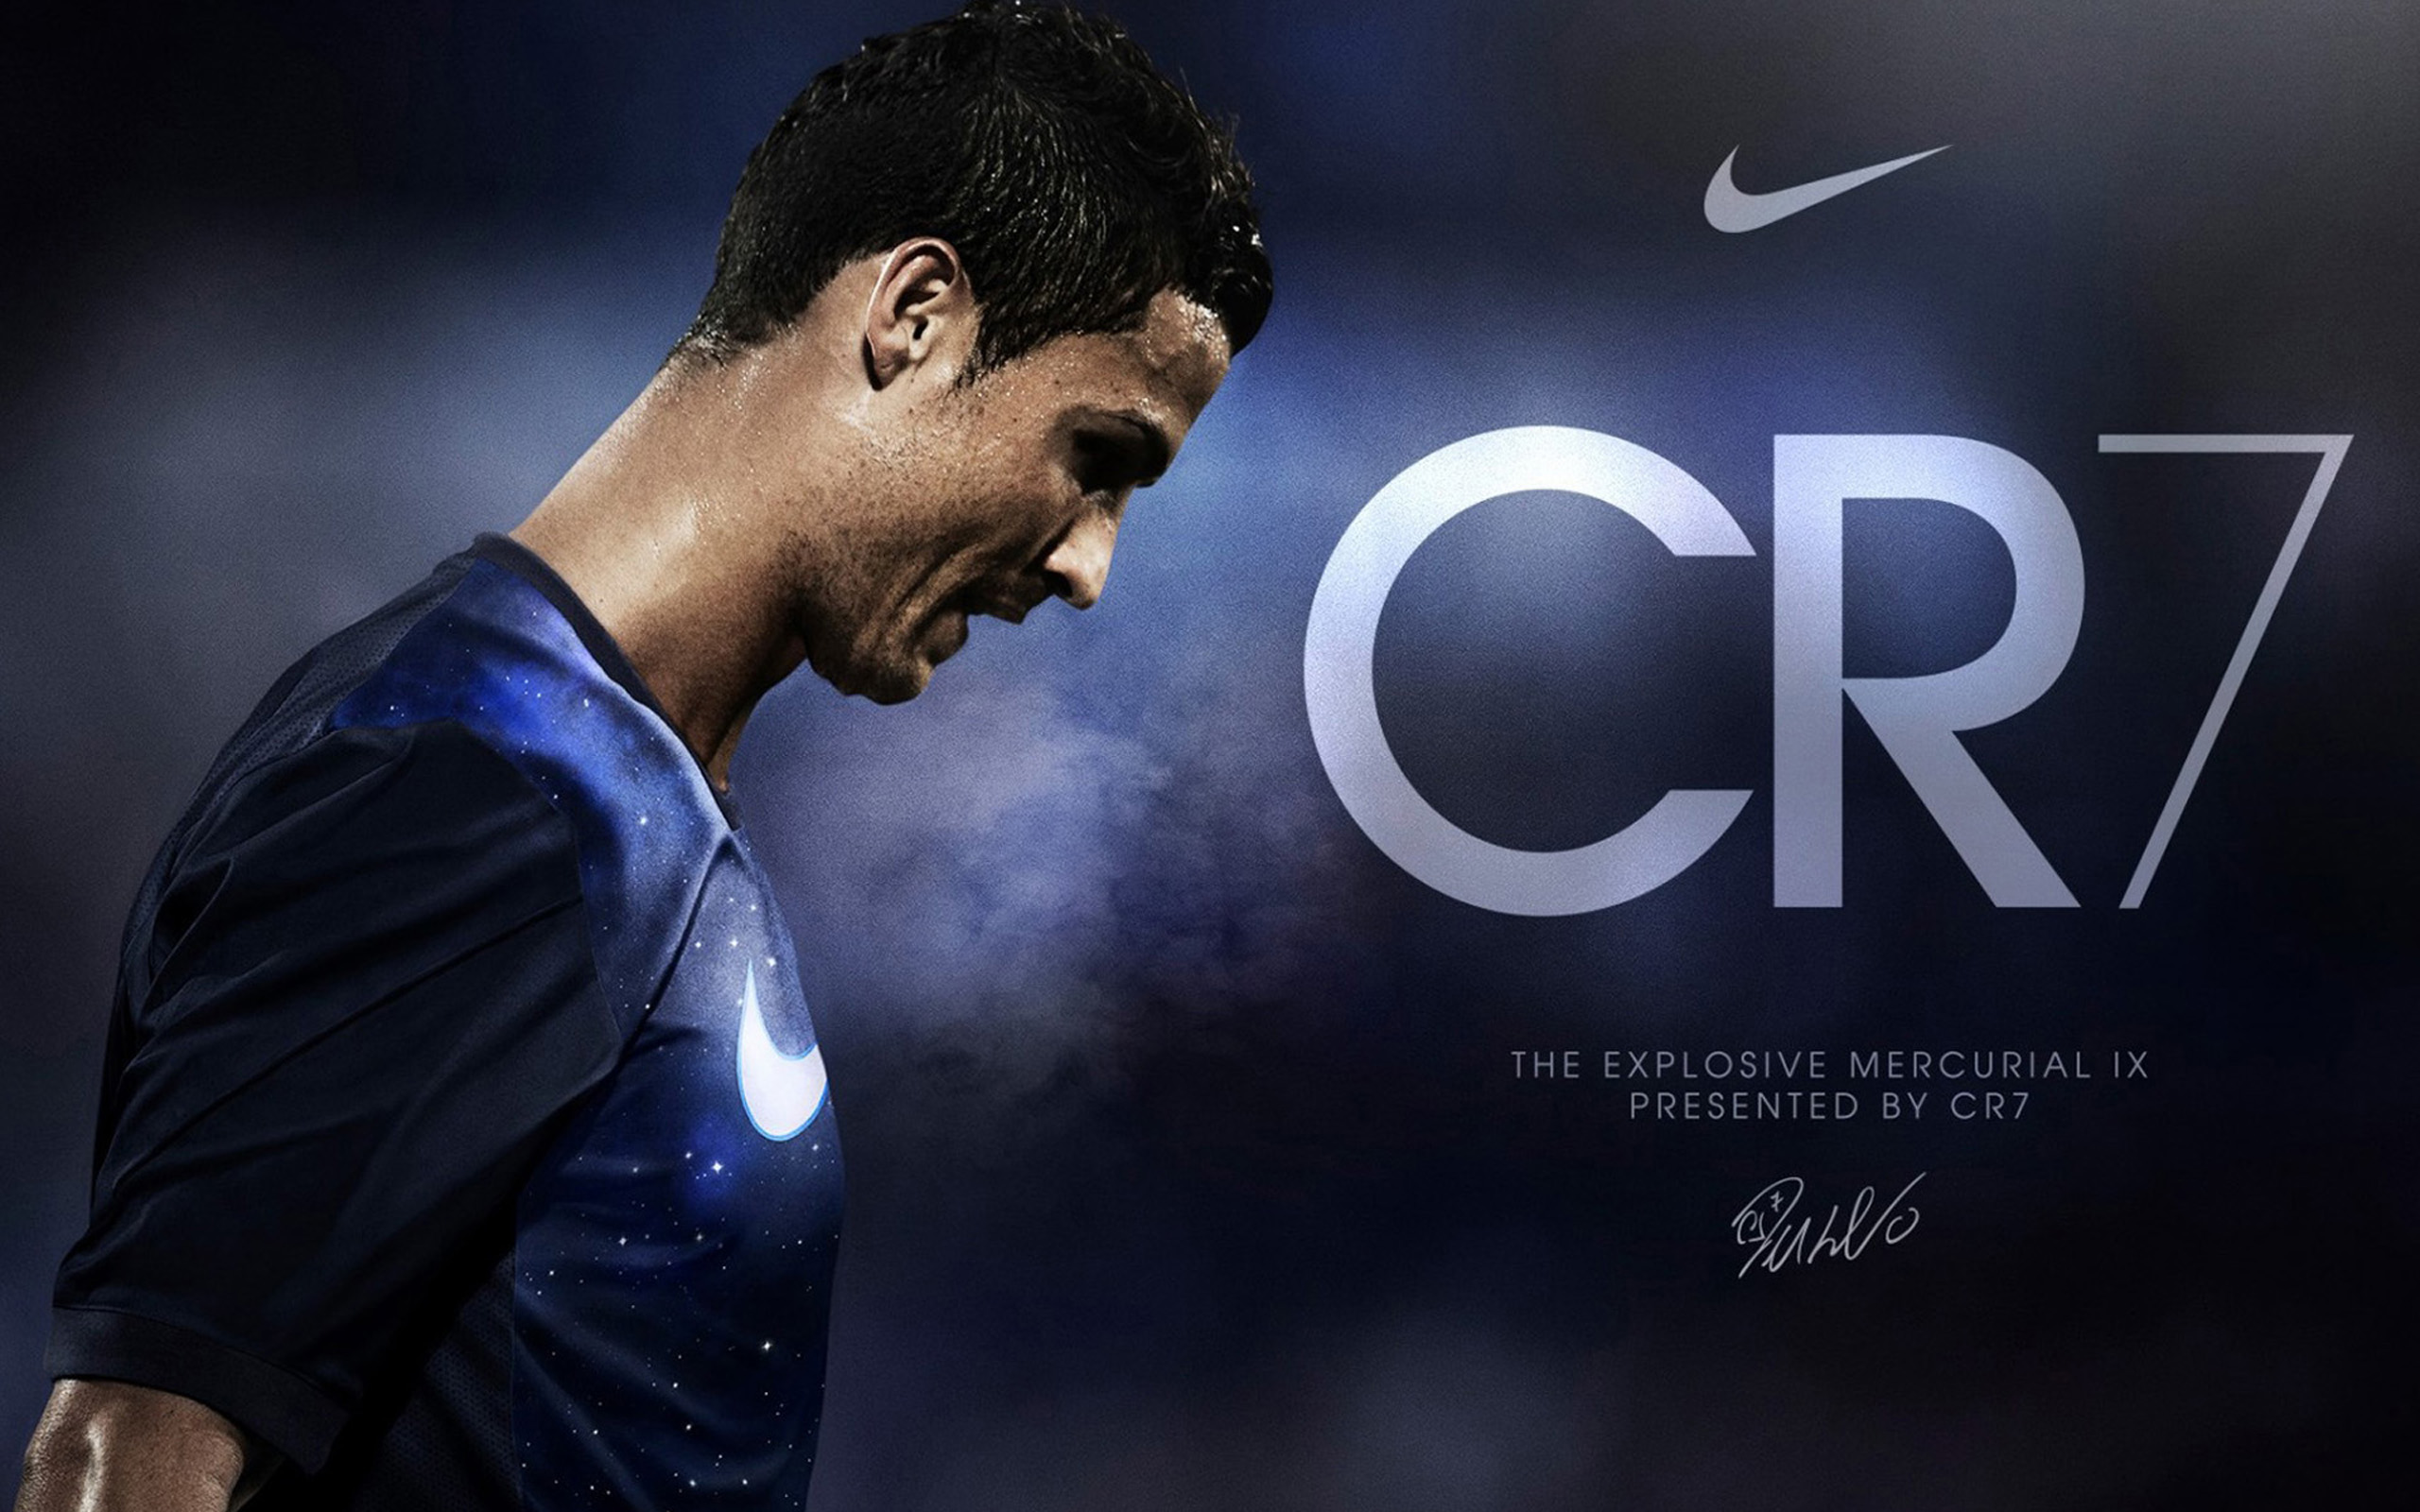 Cristiano Ronaldo Wallpaper 2015 Wallpapers Free - Kemecer.com